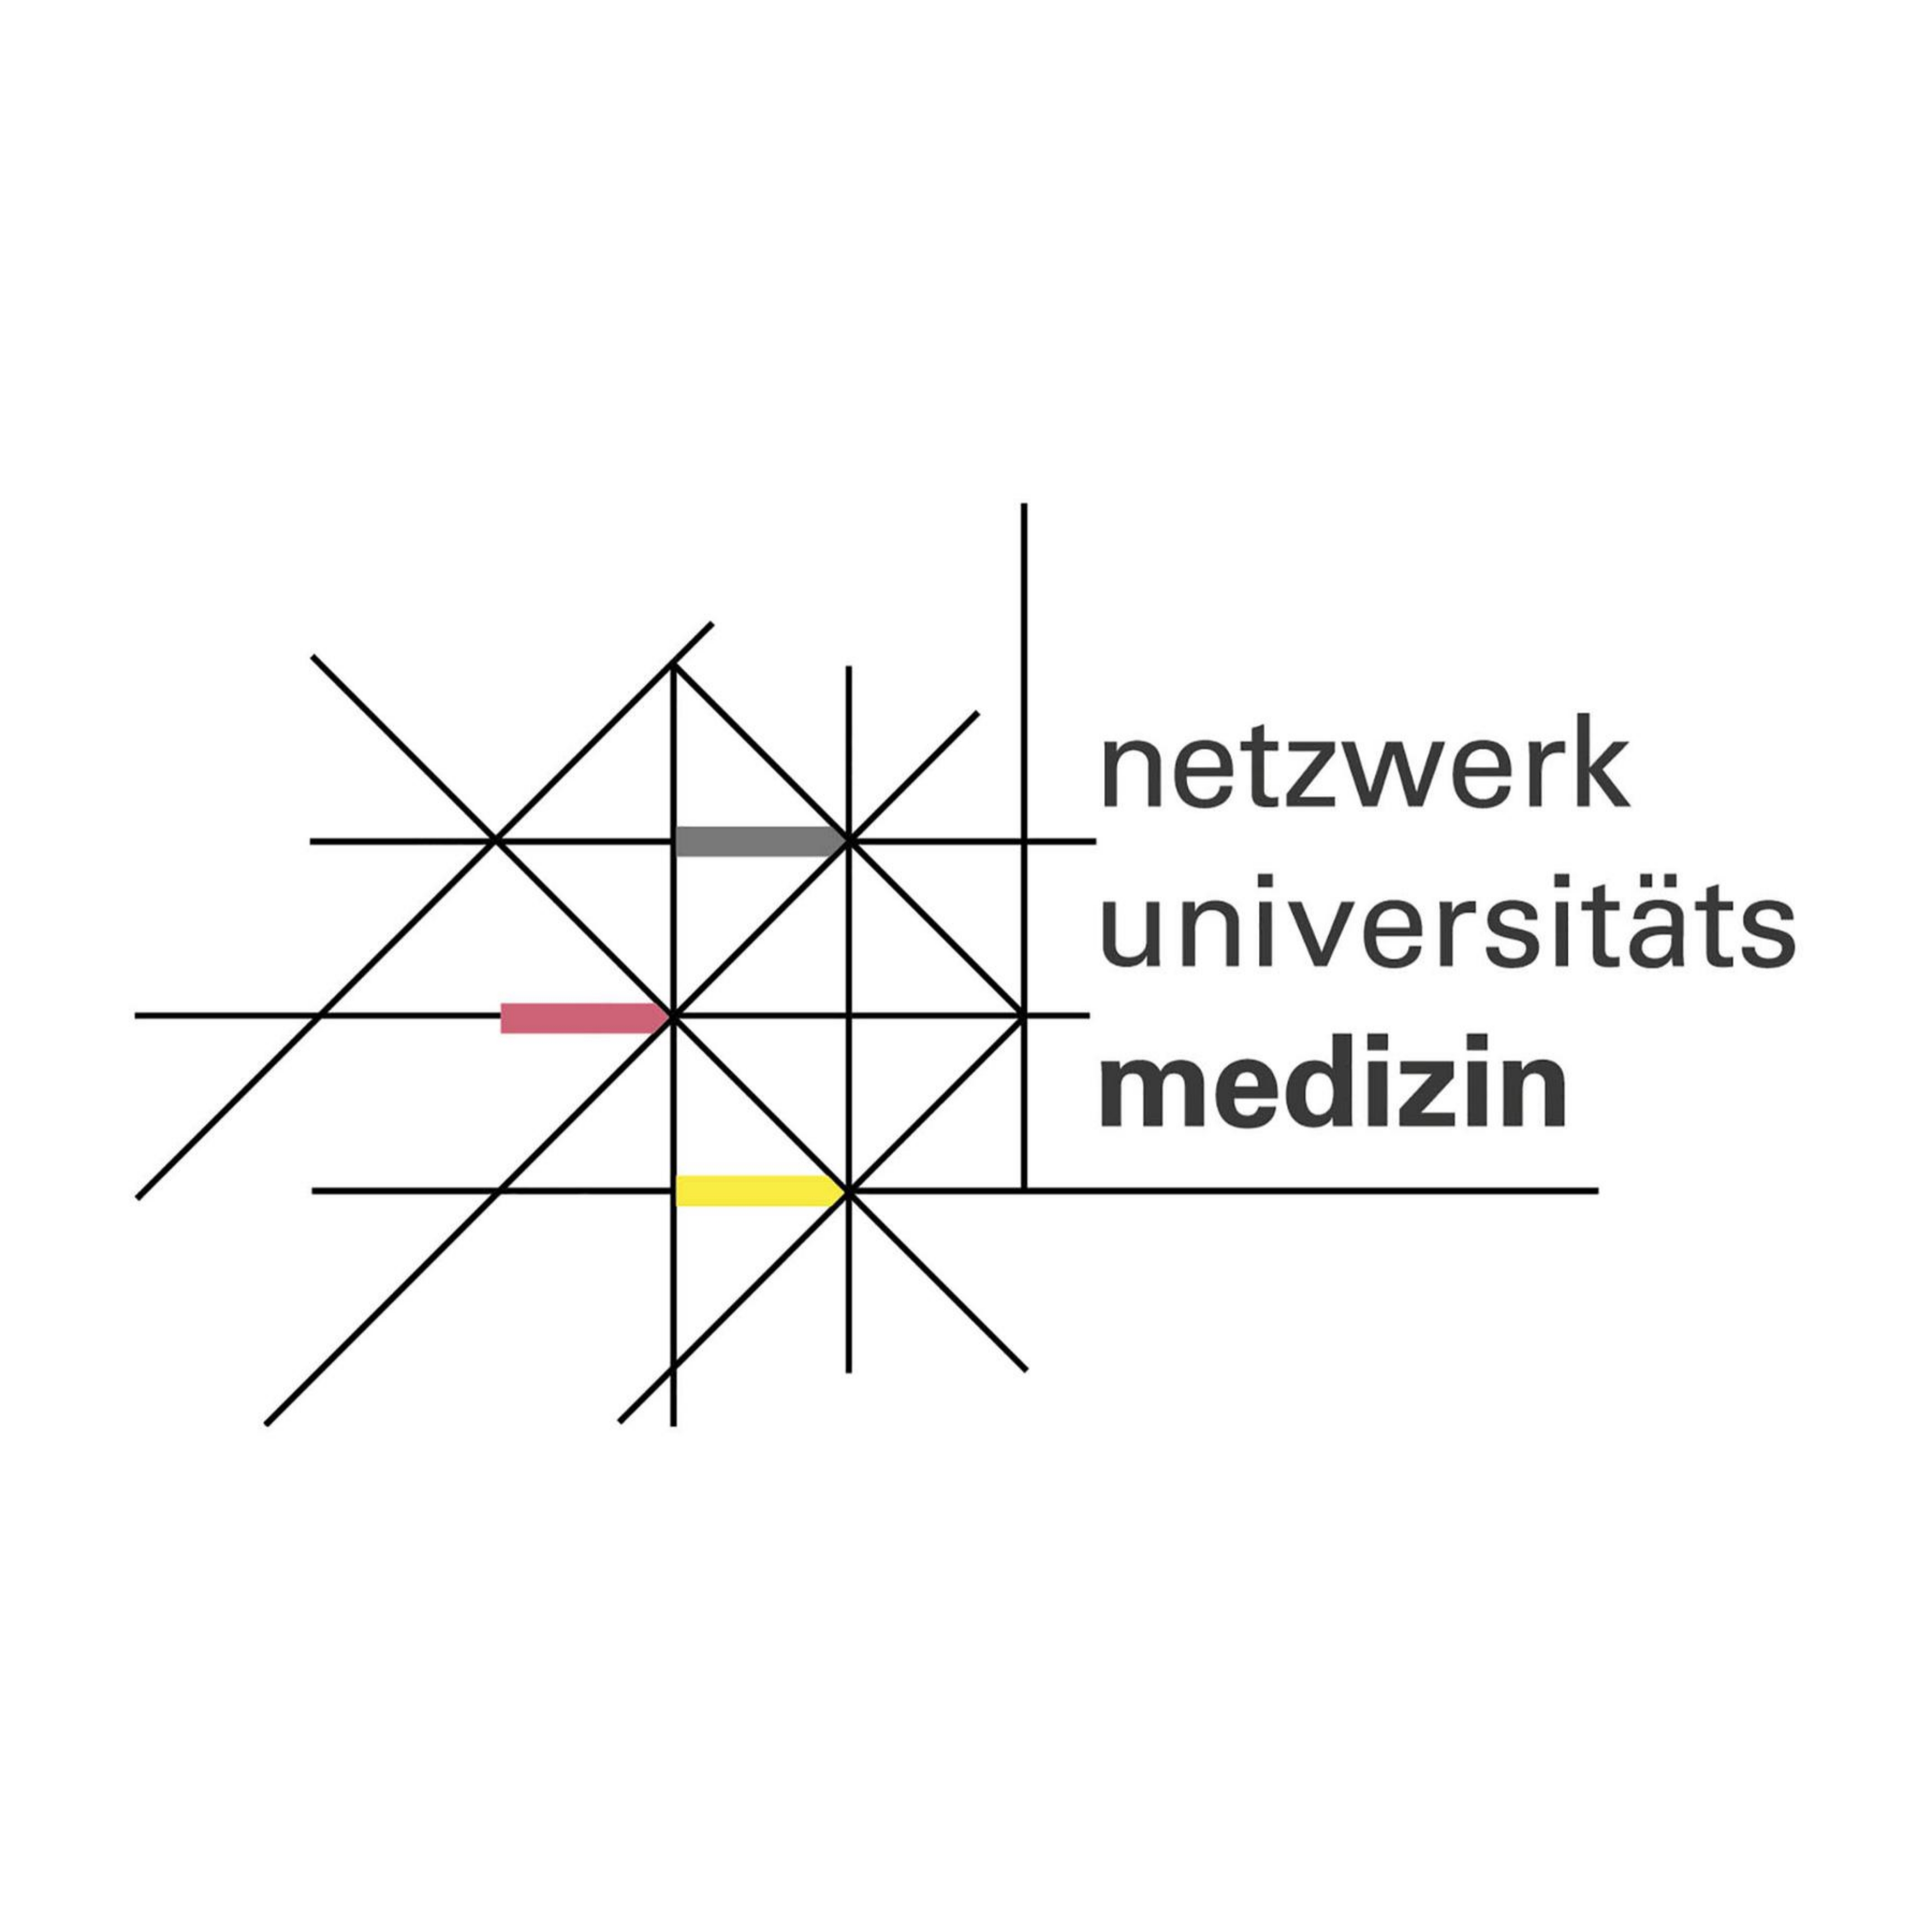 Zu sehen ist das Logo des Netzwerks Universittsmedizin. Es handelt sich um eine Wort-Bild-Marke, die ein Netzwerk symbolisiert. 